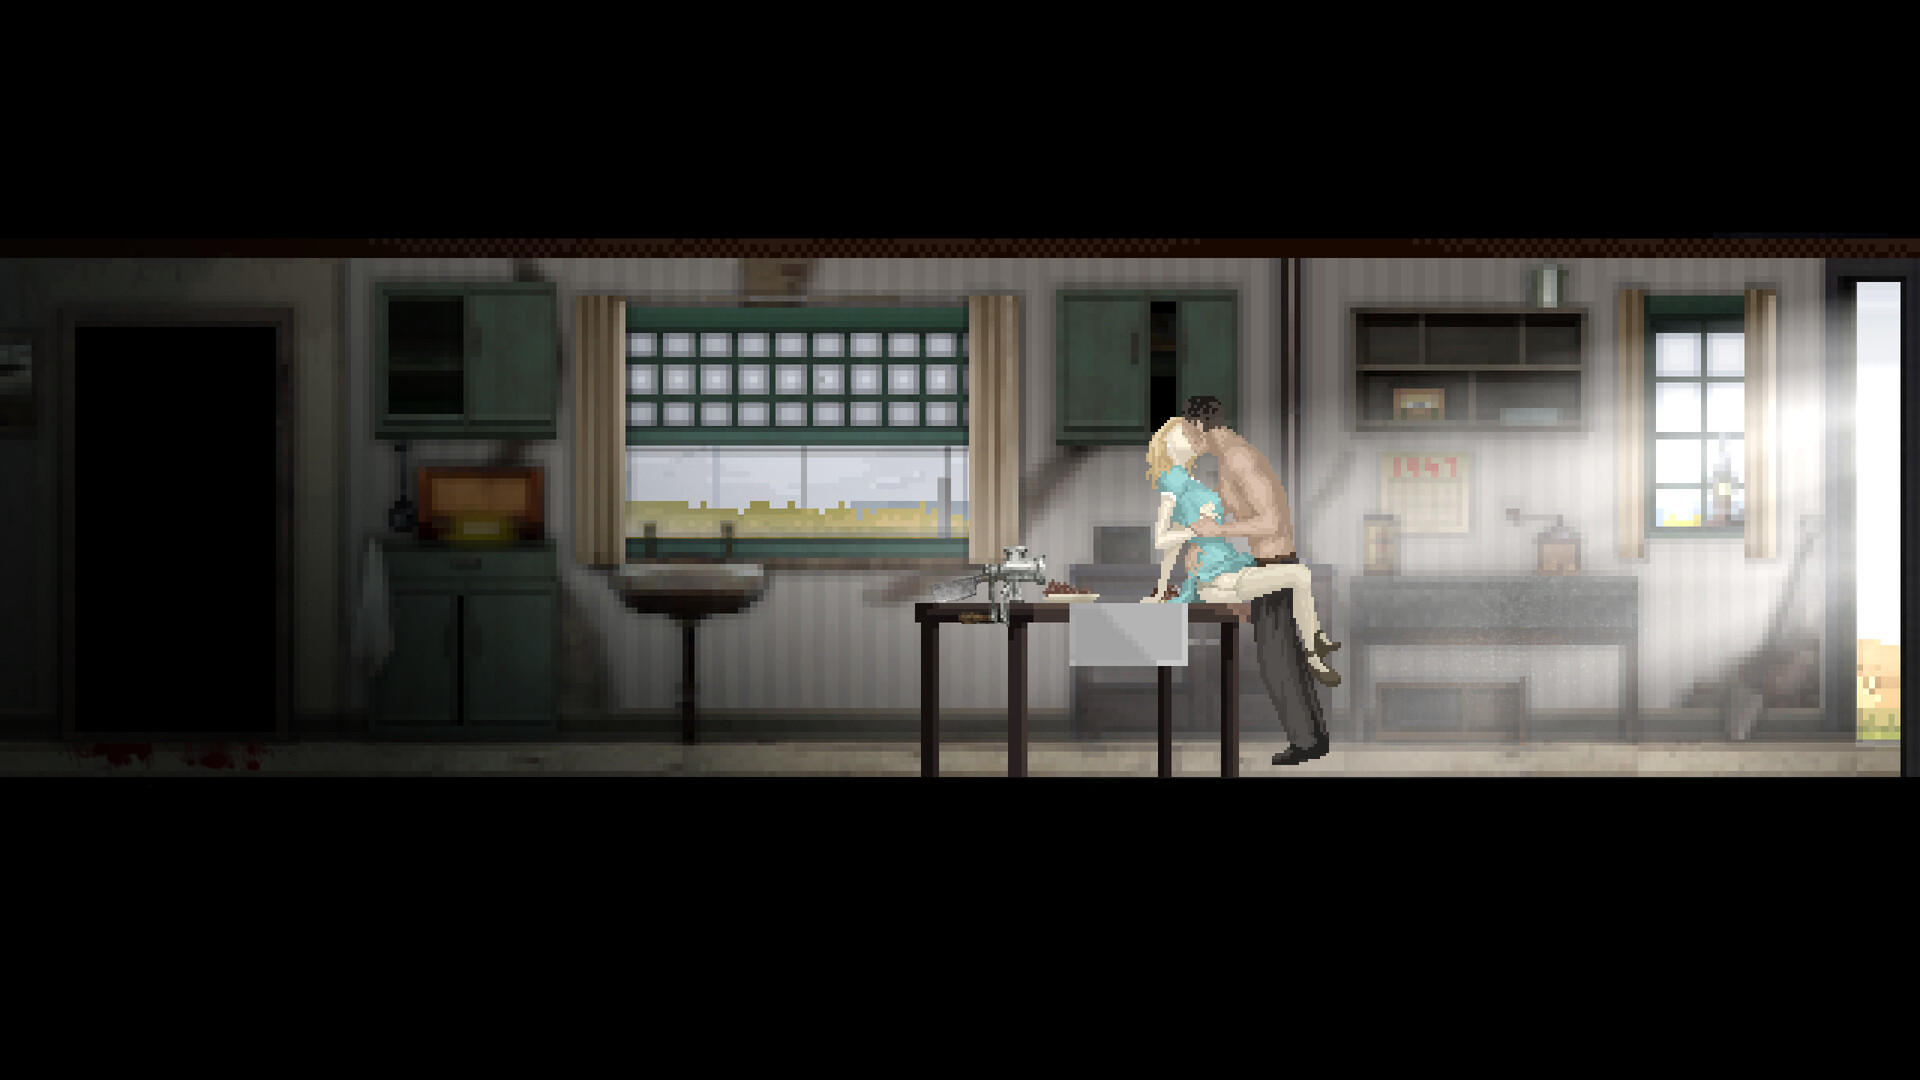 Loretta screenshot game